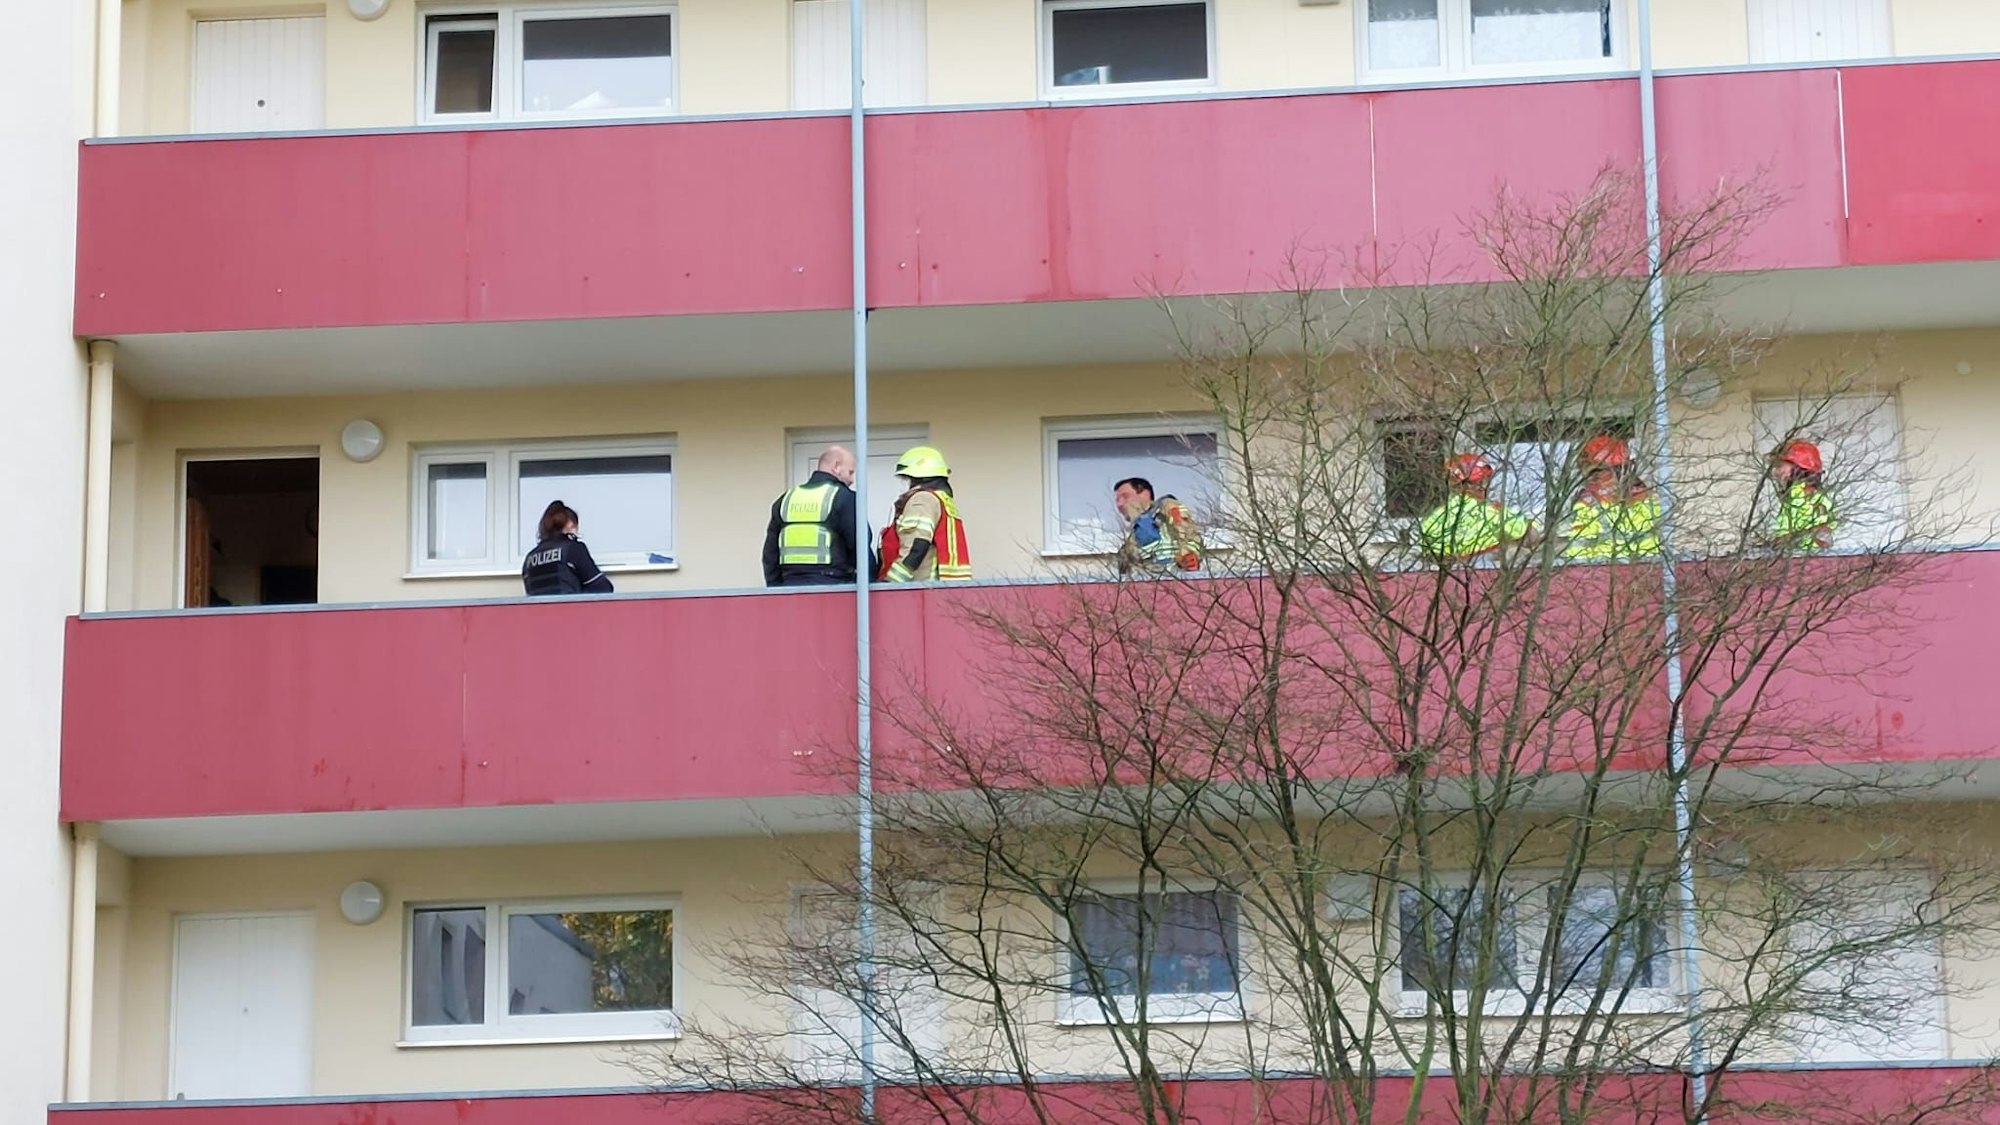 Feuerwehrleute stehen auf dem Gang vor der Wohnung, in der der Brand ausbrach. Es ist ein roter, langer Balkon.